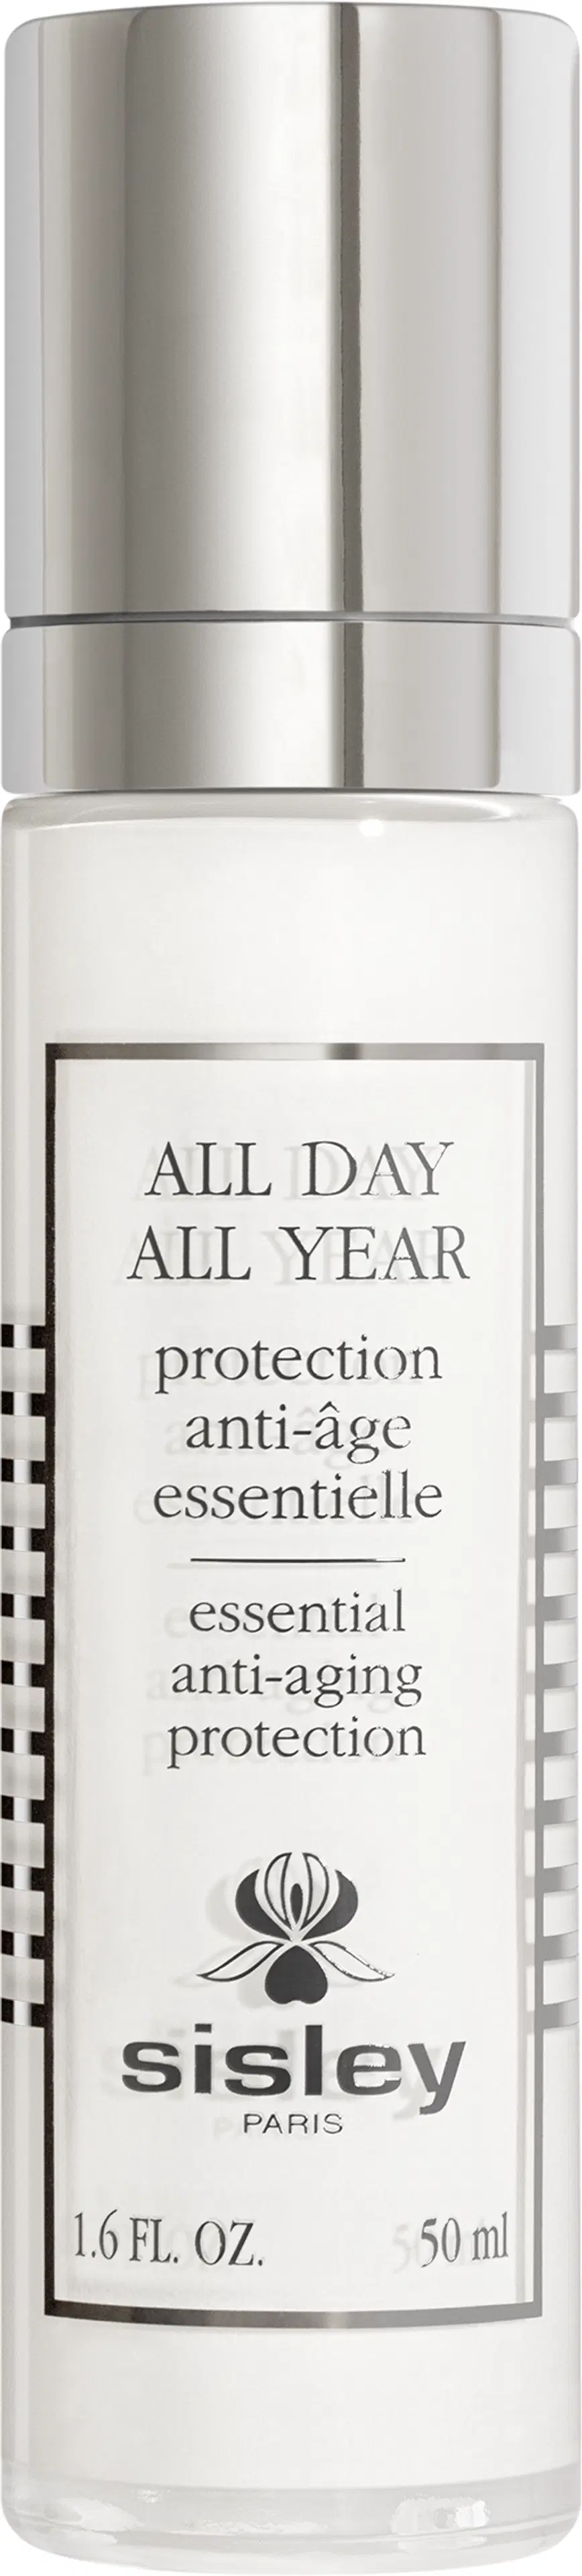 Sisley All Day All Year suojaava anti-age päivävoide 50 ml